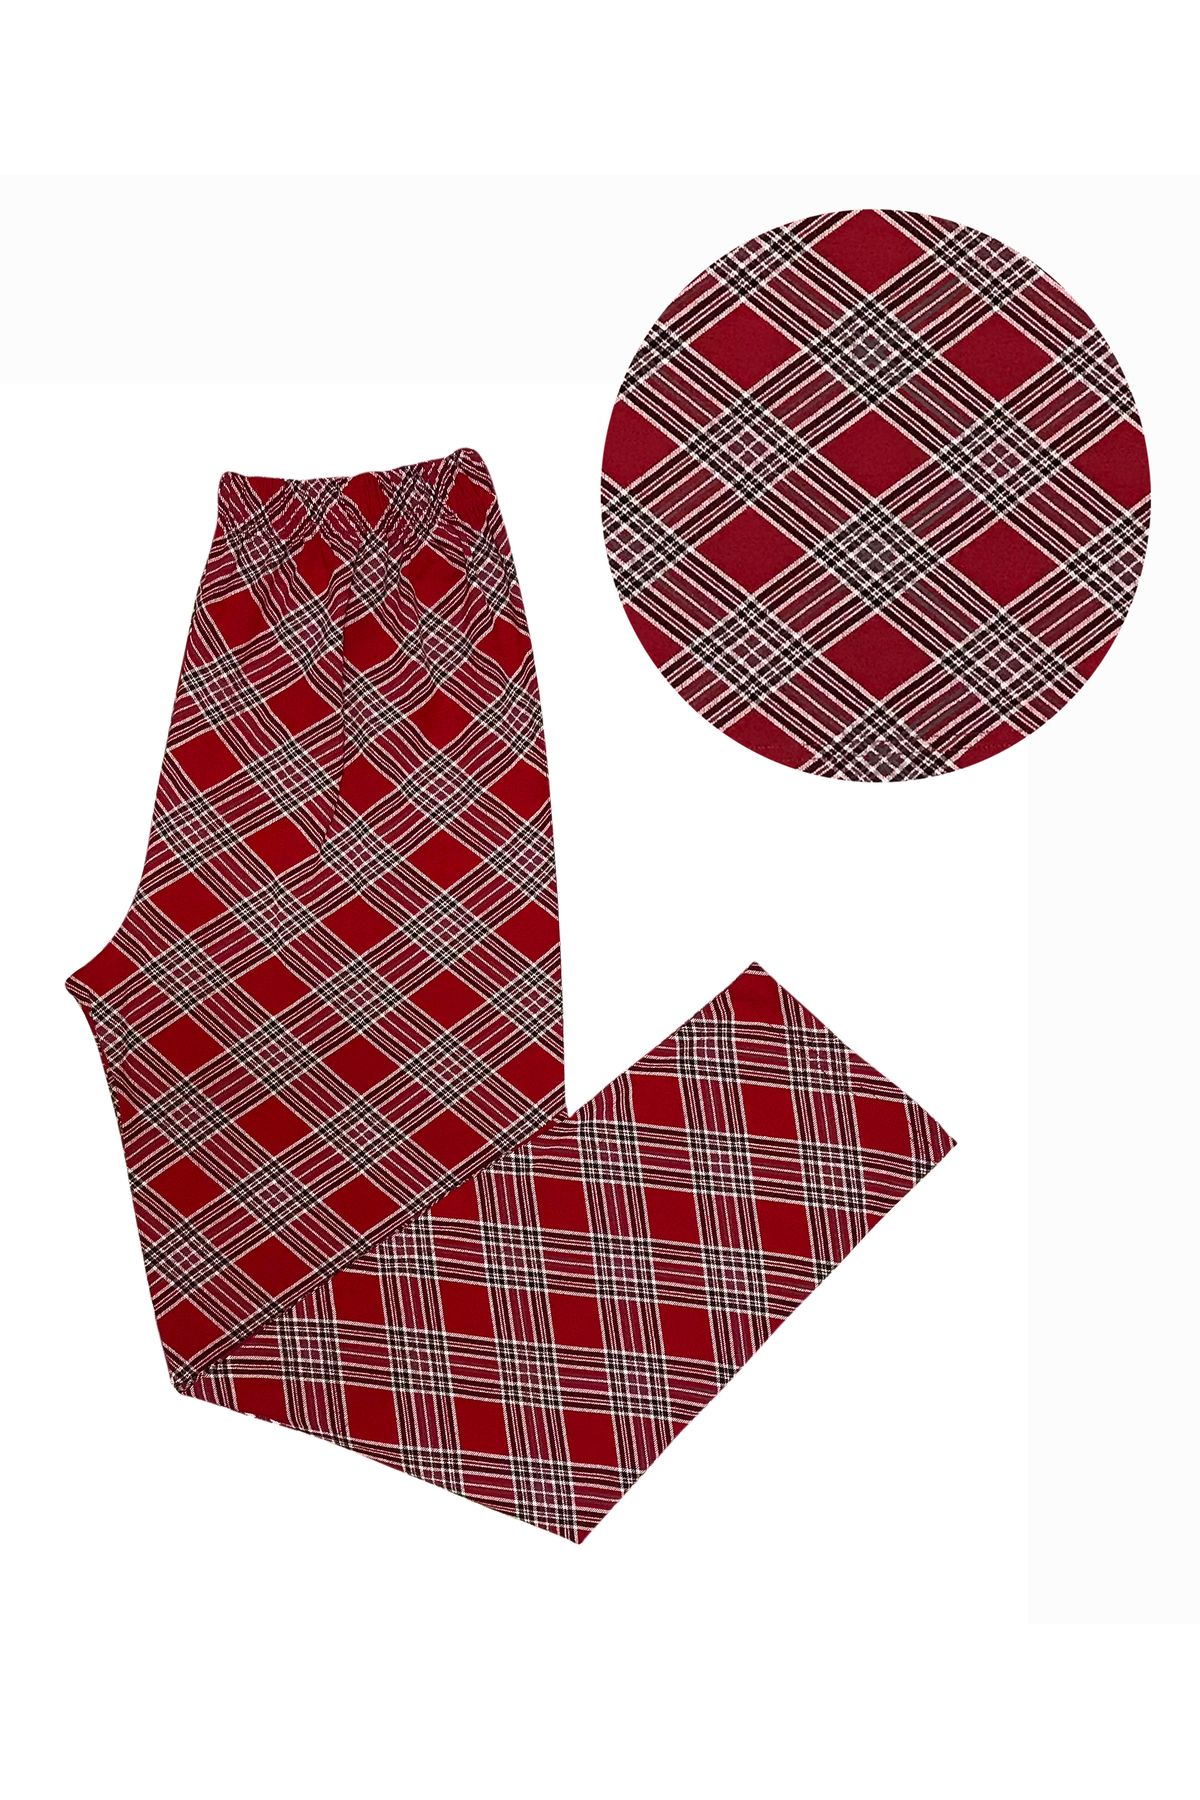 BUBİ GİYİM Yılbaşı Temalı Çapraz Ekose Desenli Kırmızı Örme Kadın Pijama Altı ( Geniş Beden Aralıklı)